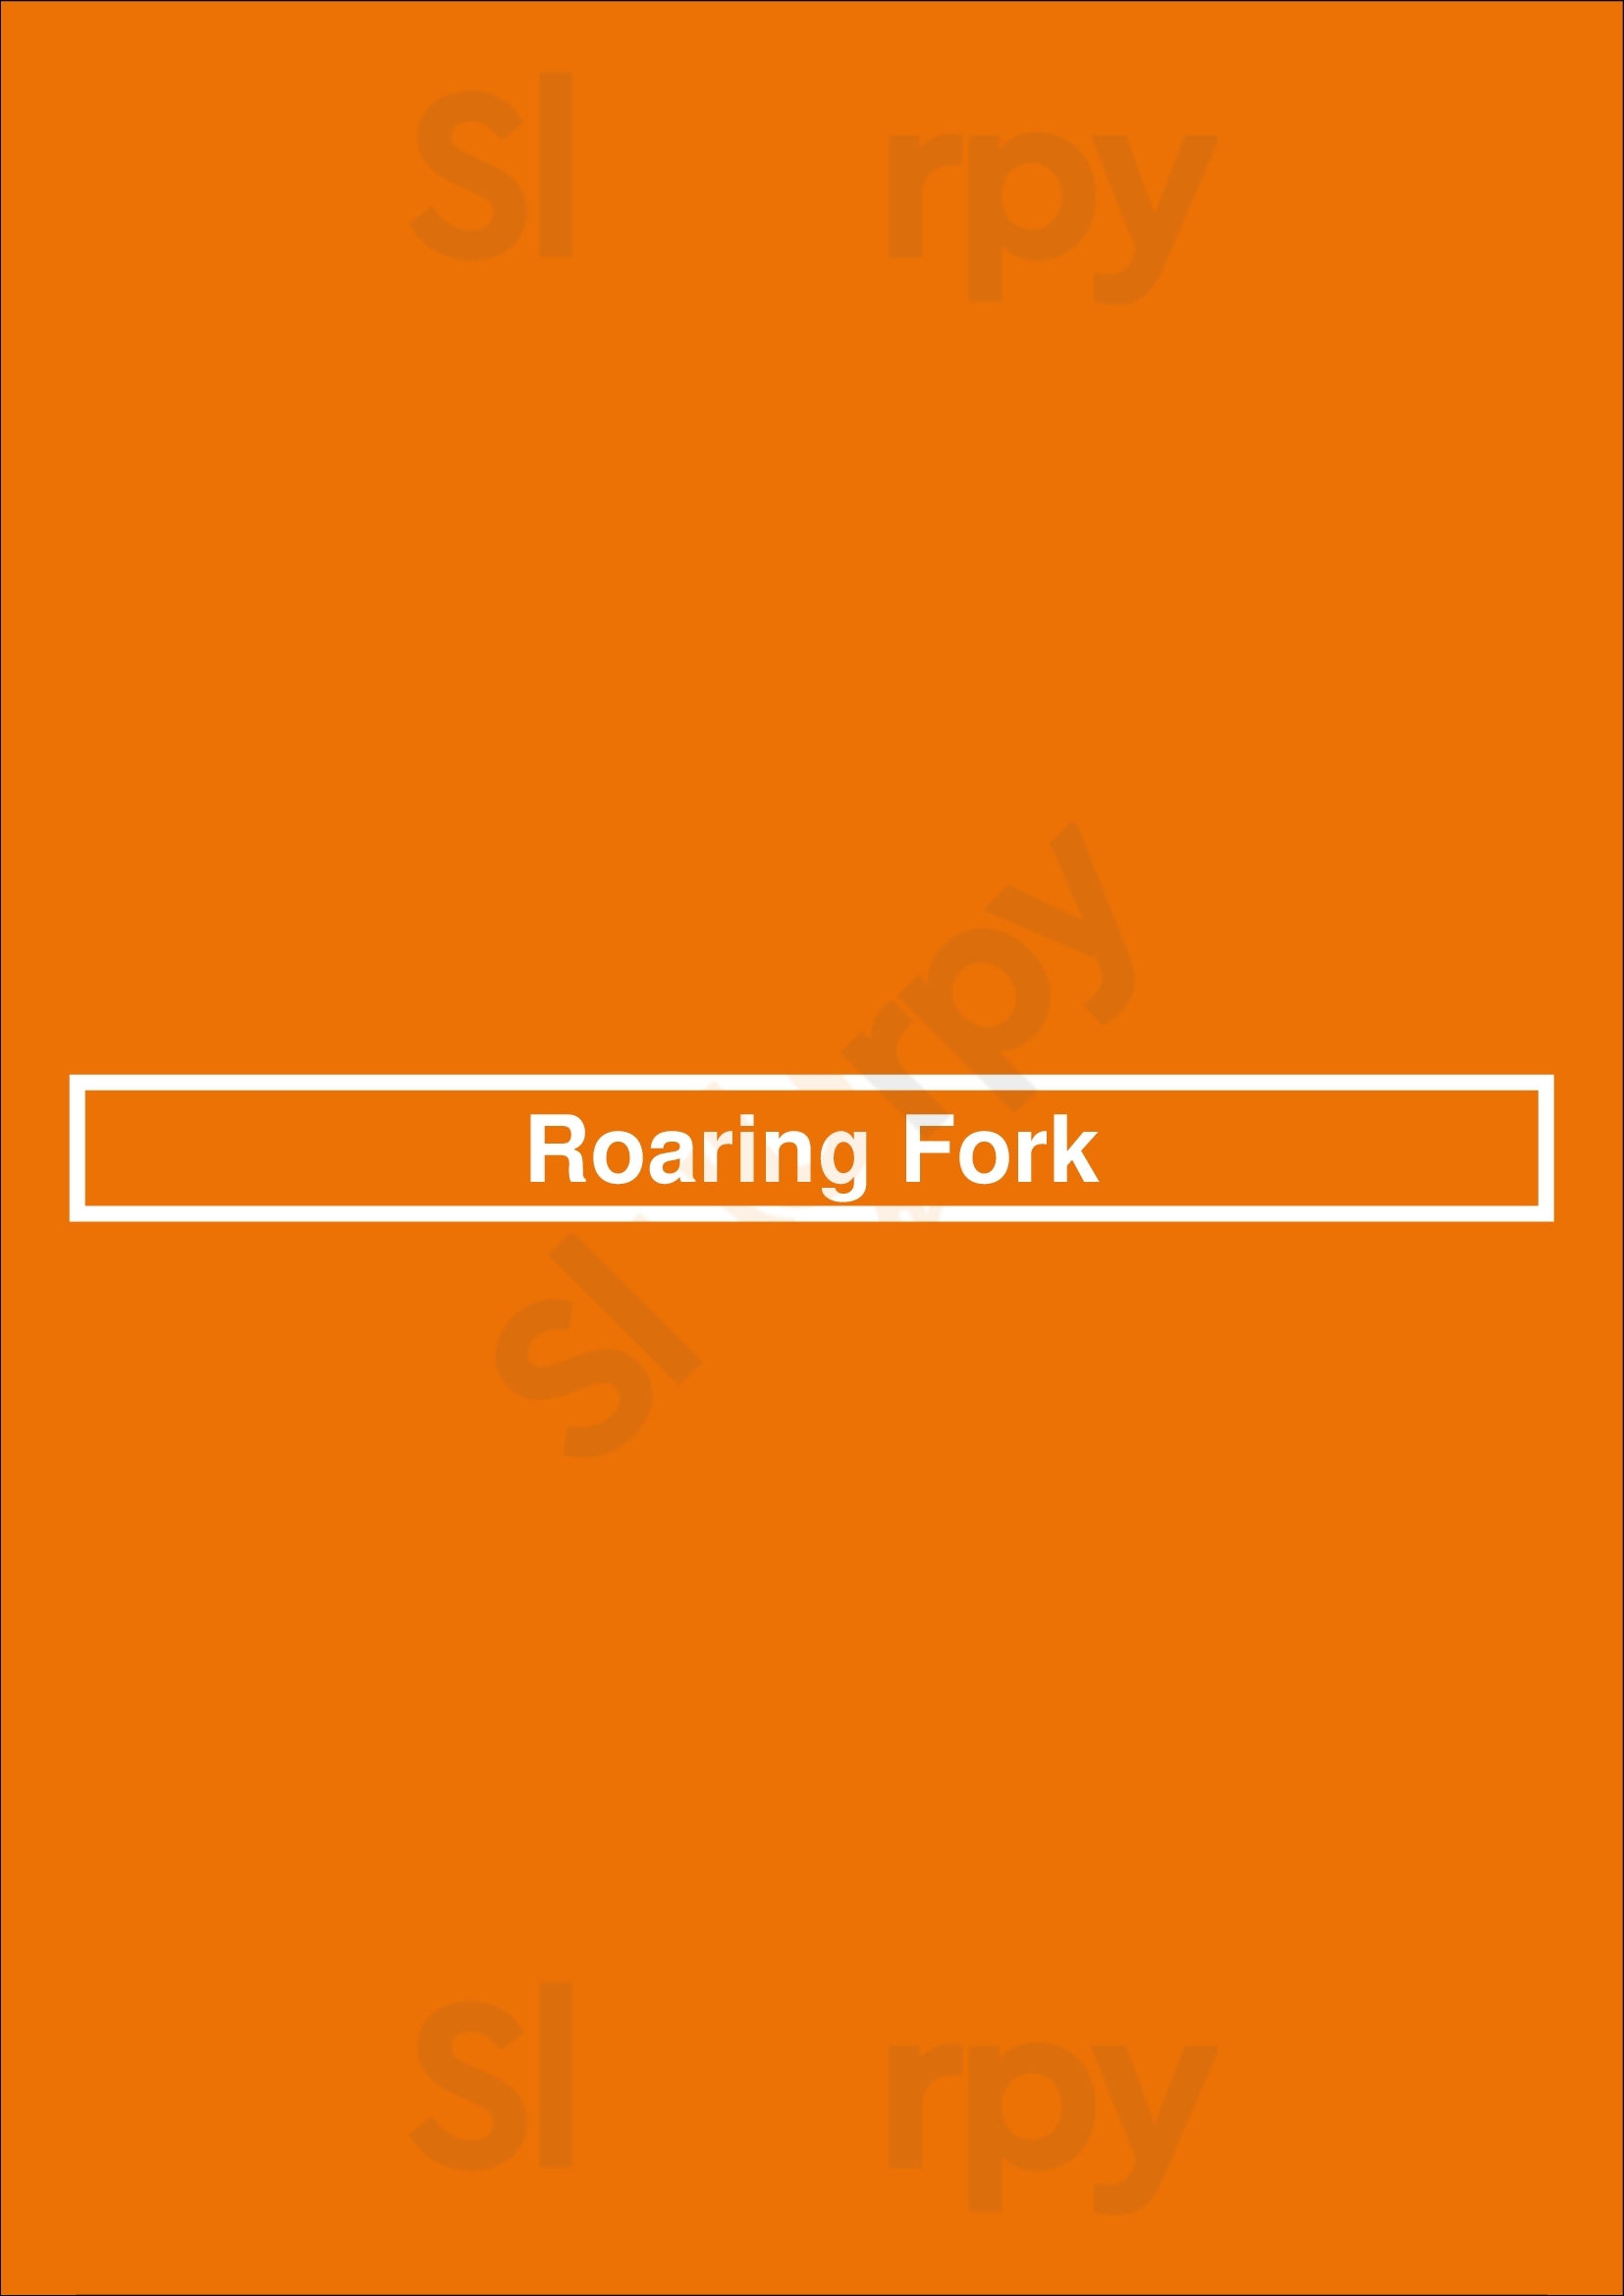 Roaring Fork Scottsdale Menu - 1